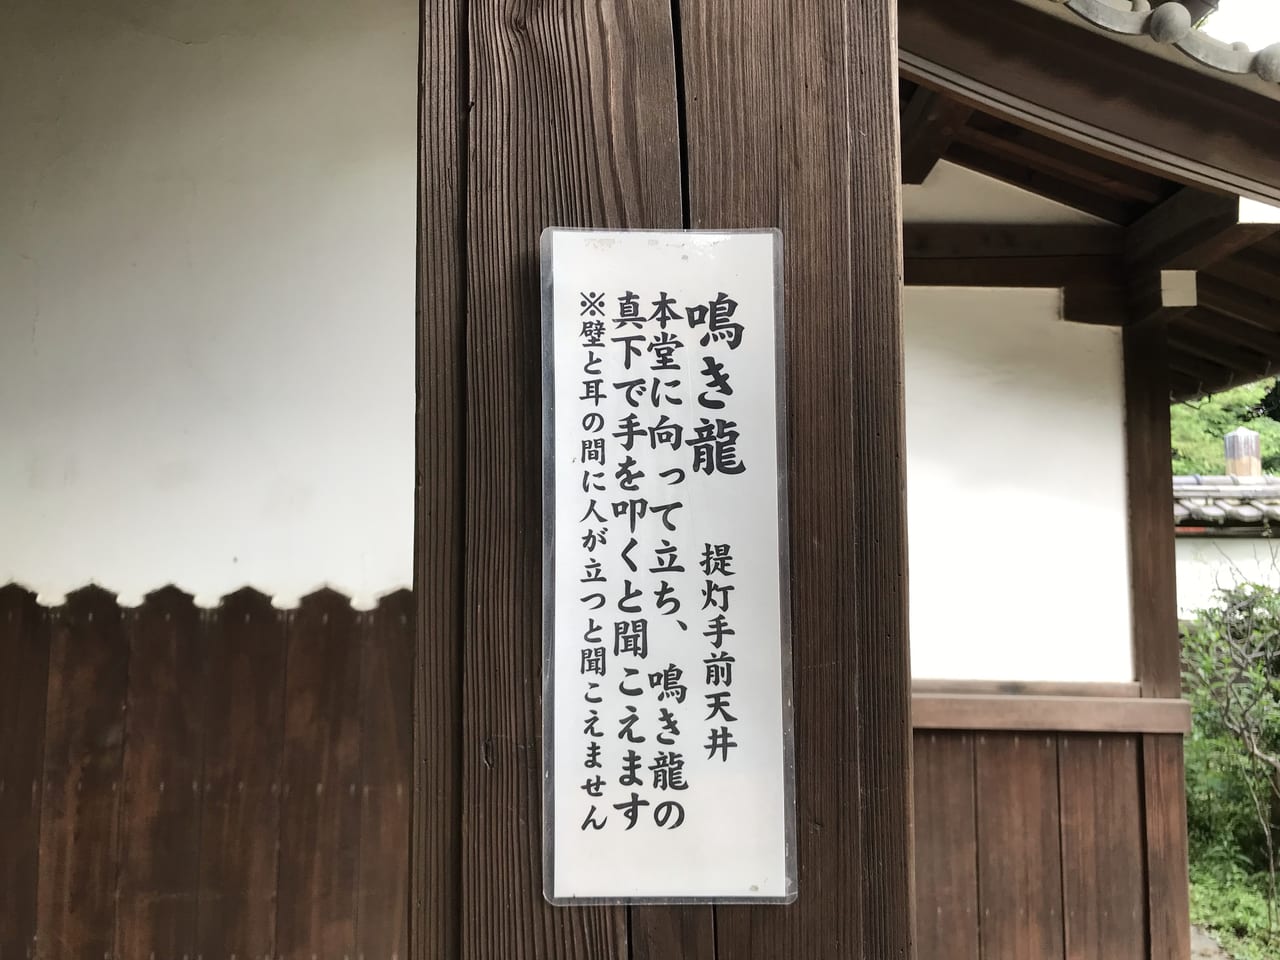 世田谷観音は正式名称世田谷山観音寺といい、どの宗派にも属さない単立寺院です。特攻観音堂もある祈りの場です。奈良県極楽寺に伝わる什物梵鐘があります。